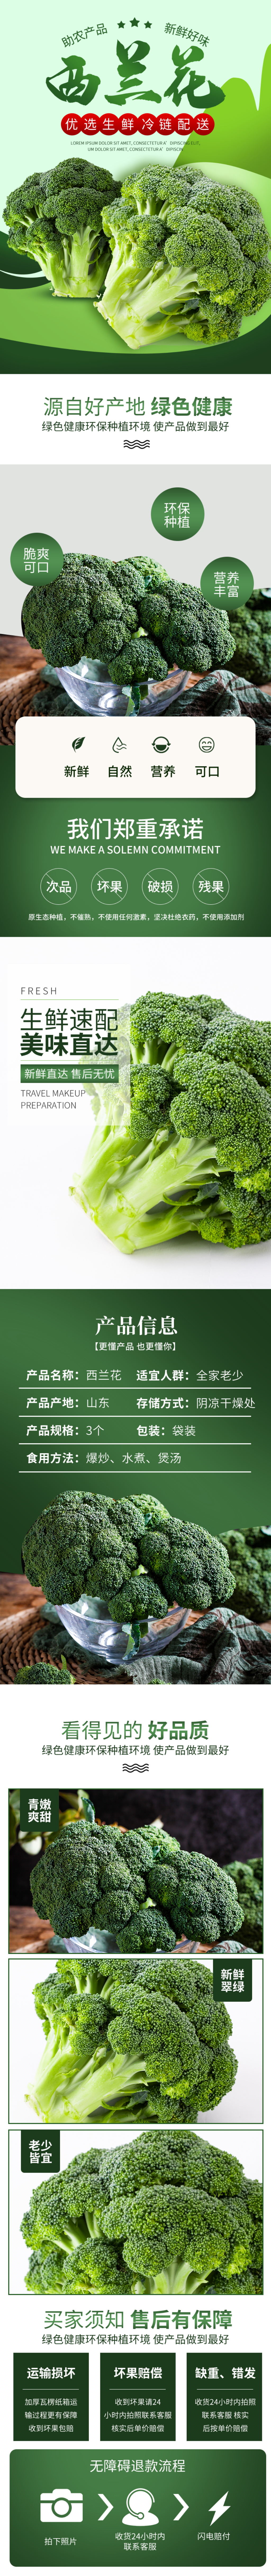 蔬菜生鲜商超市西兰花青菜果蔬瓜果详情页